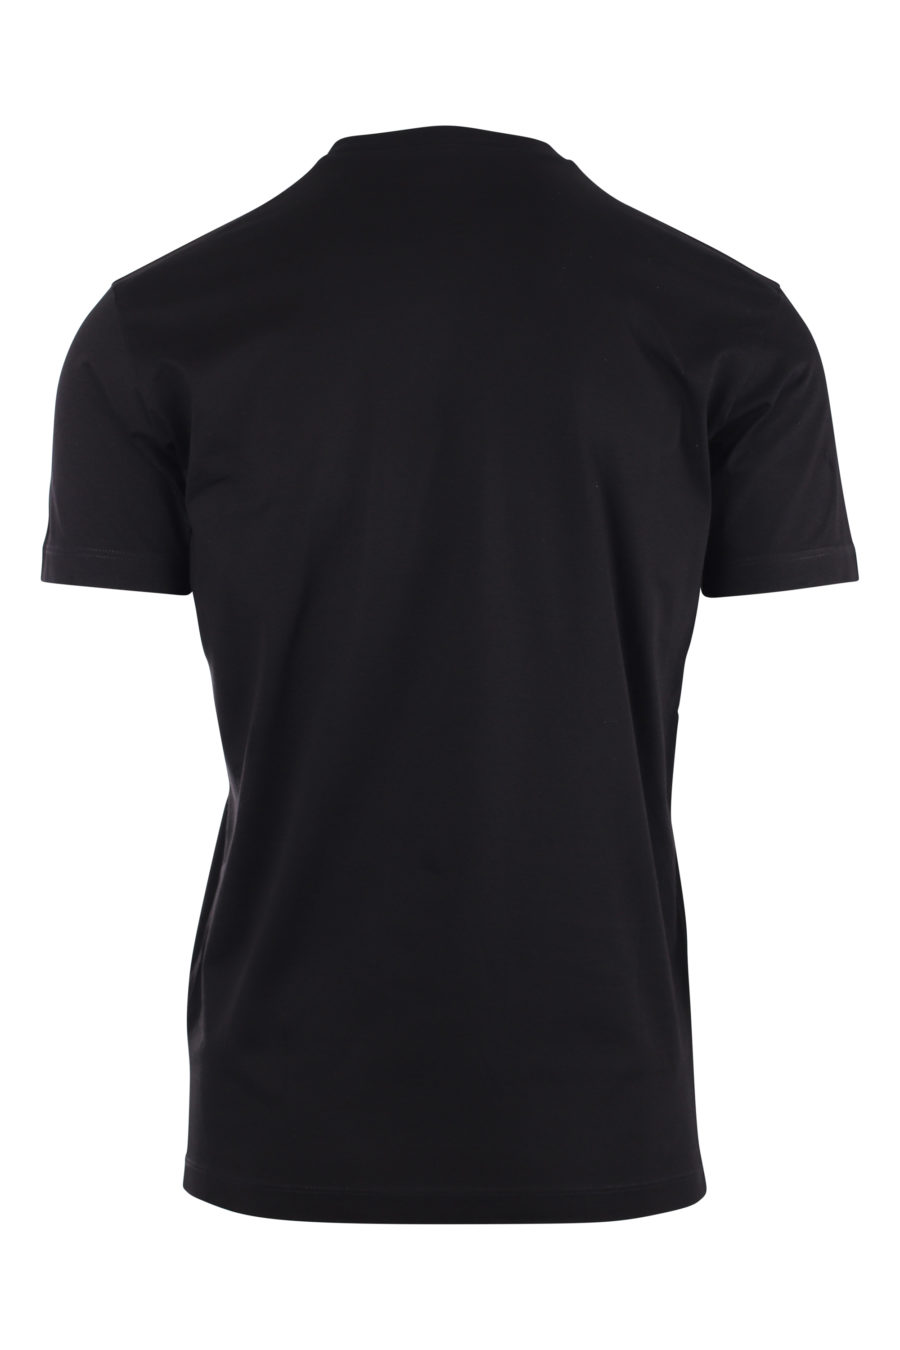 Camiseta negra con logo pequeño ceresio 9 - IMG 9730